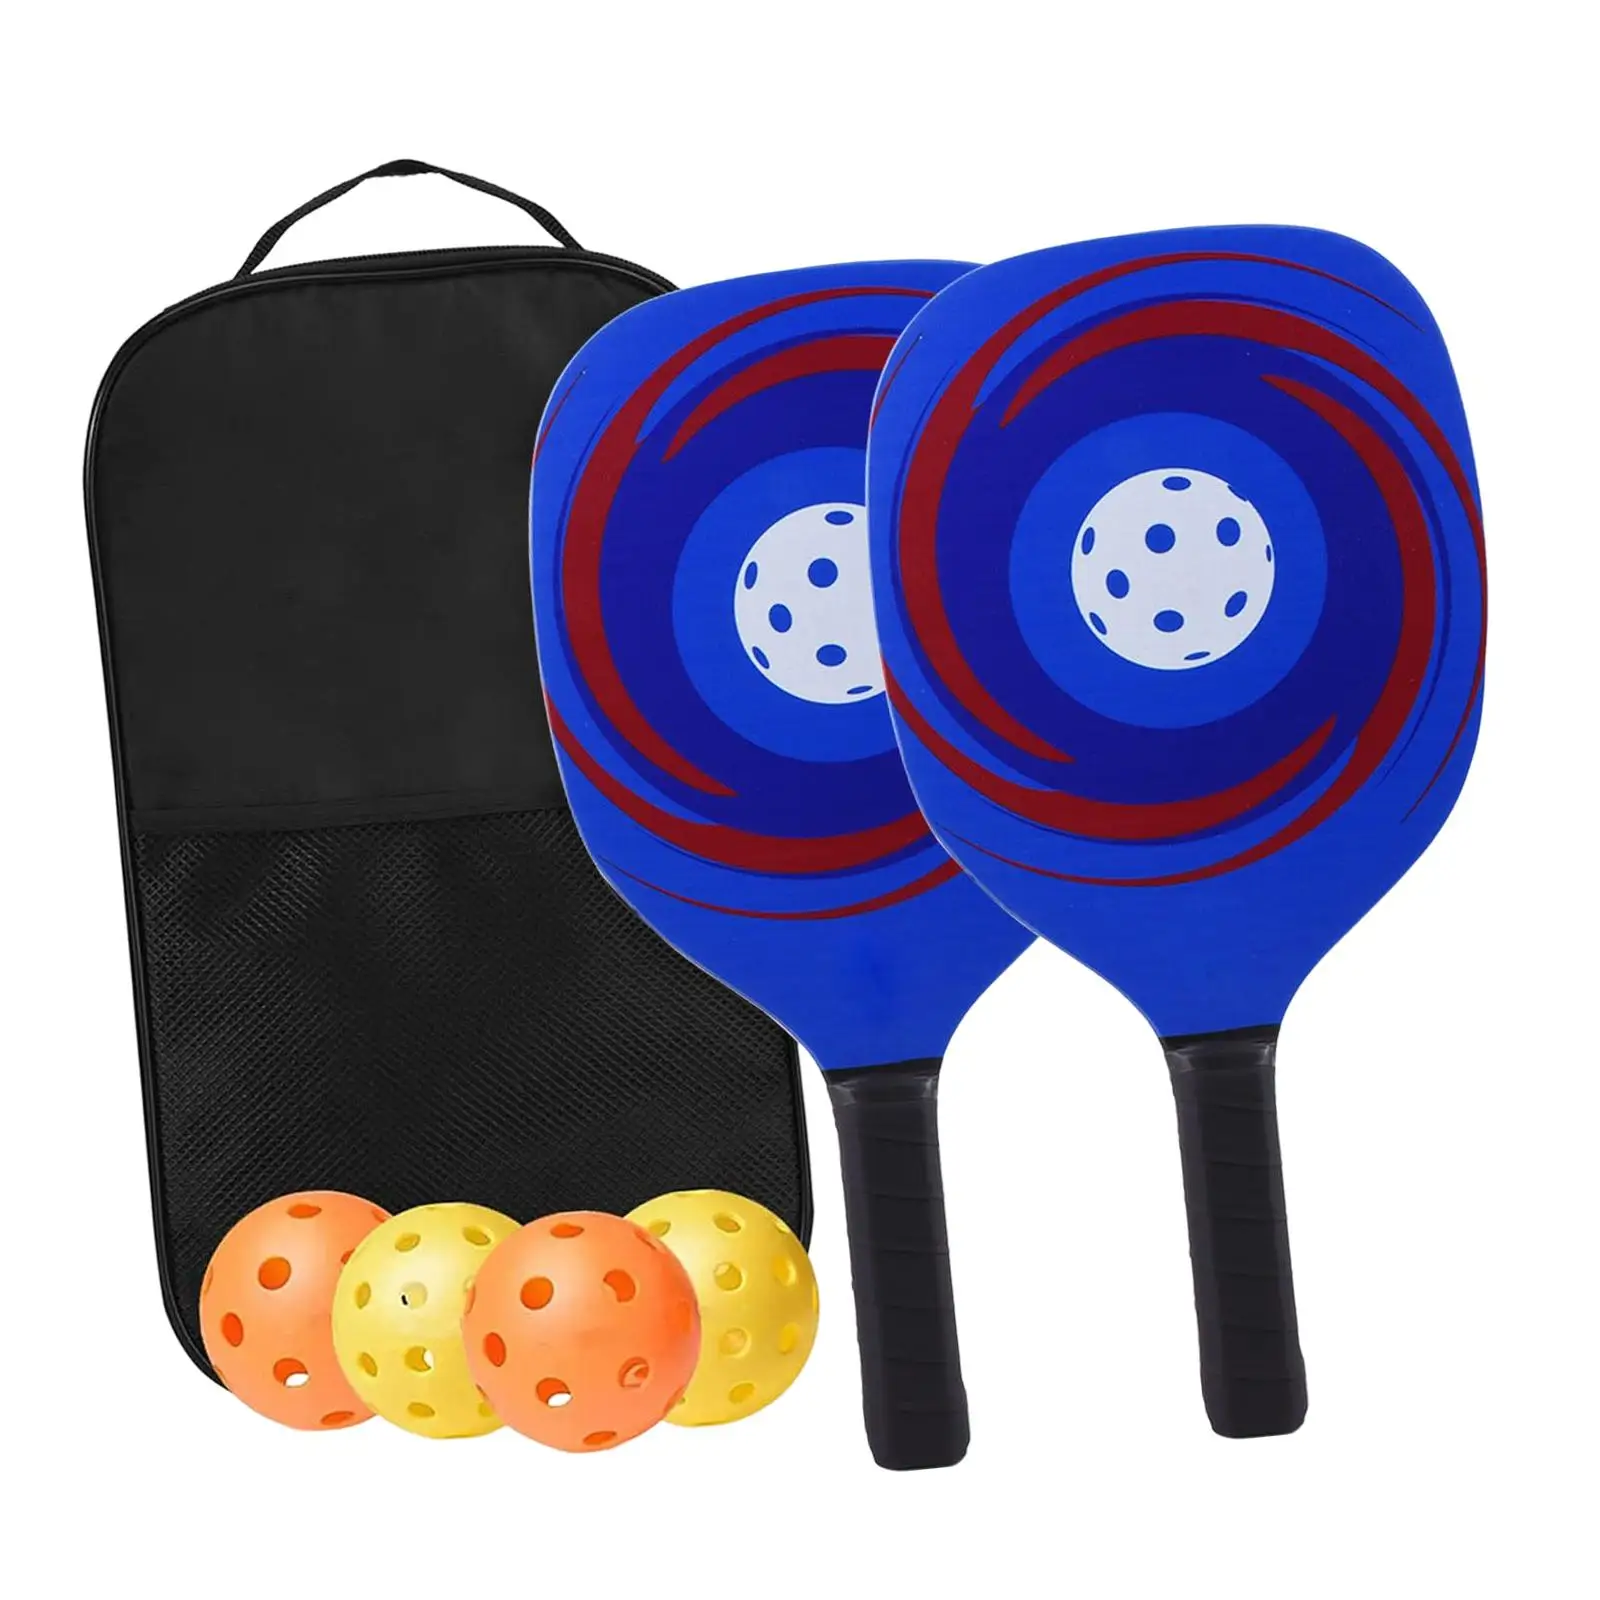 

Набор лопастей для пиклебола включает в себя 2 ракетки, 4 пиклебола, сумка для переноски для мужчин и женщин